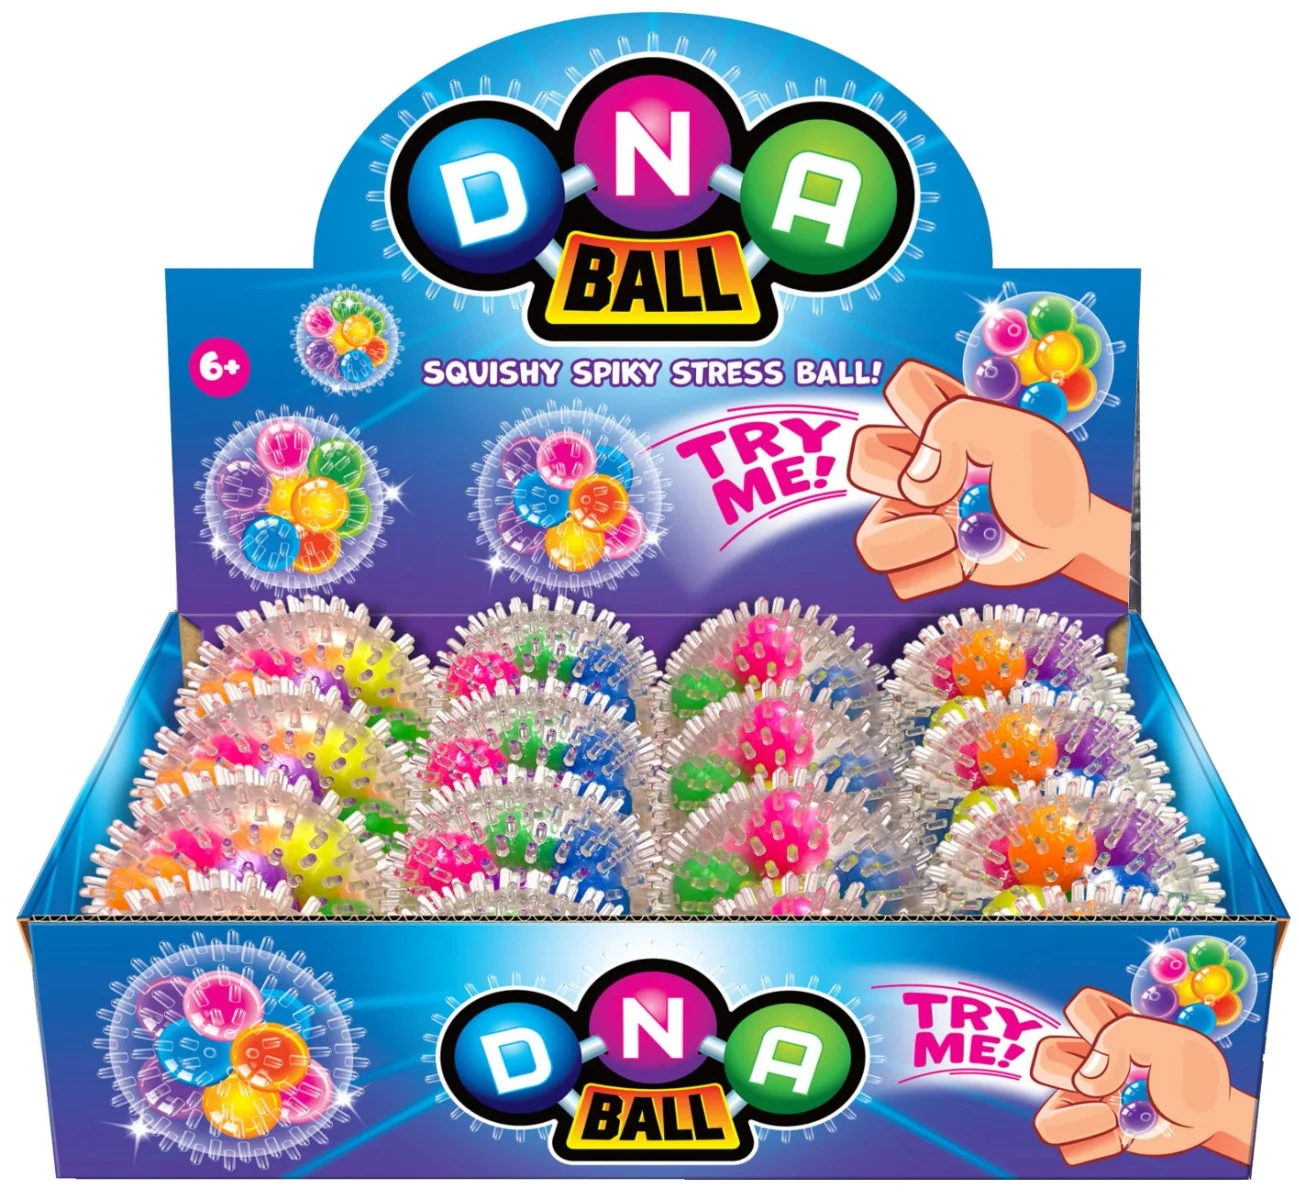 DNA Ball